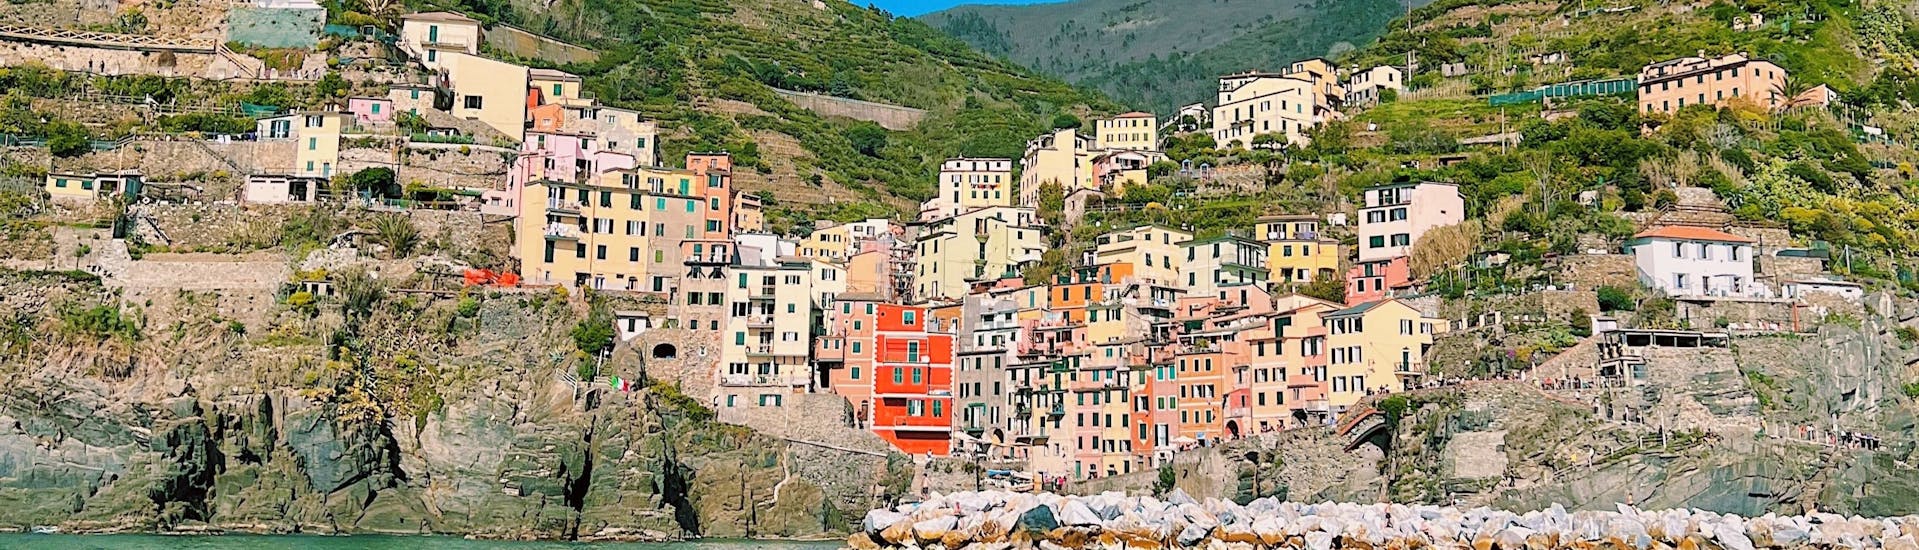 Le village de Riomaggiore vu de la mer pendant l'excursion en bateau à voile de La Spezia à Cinque Terre avec déjeuner avec Velagiovane.